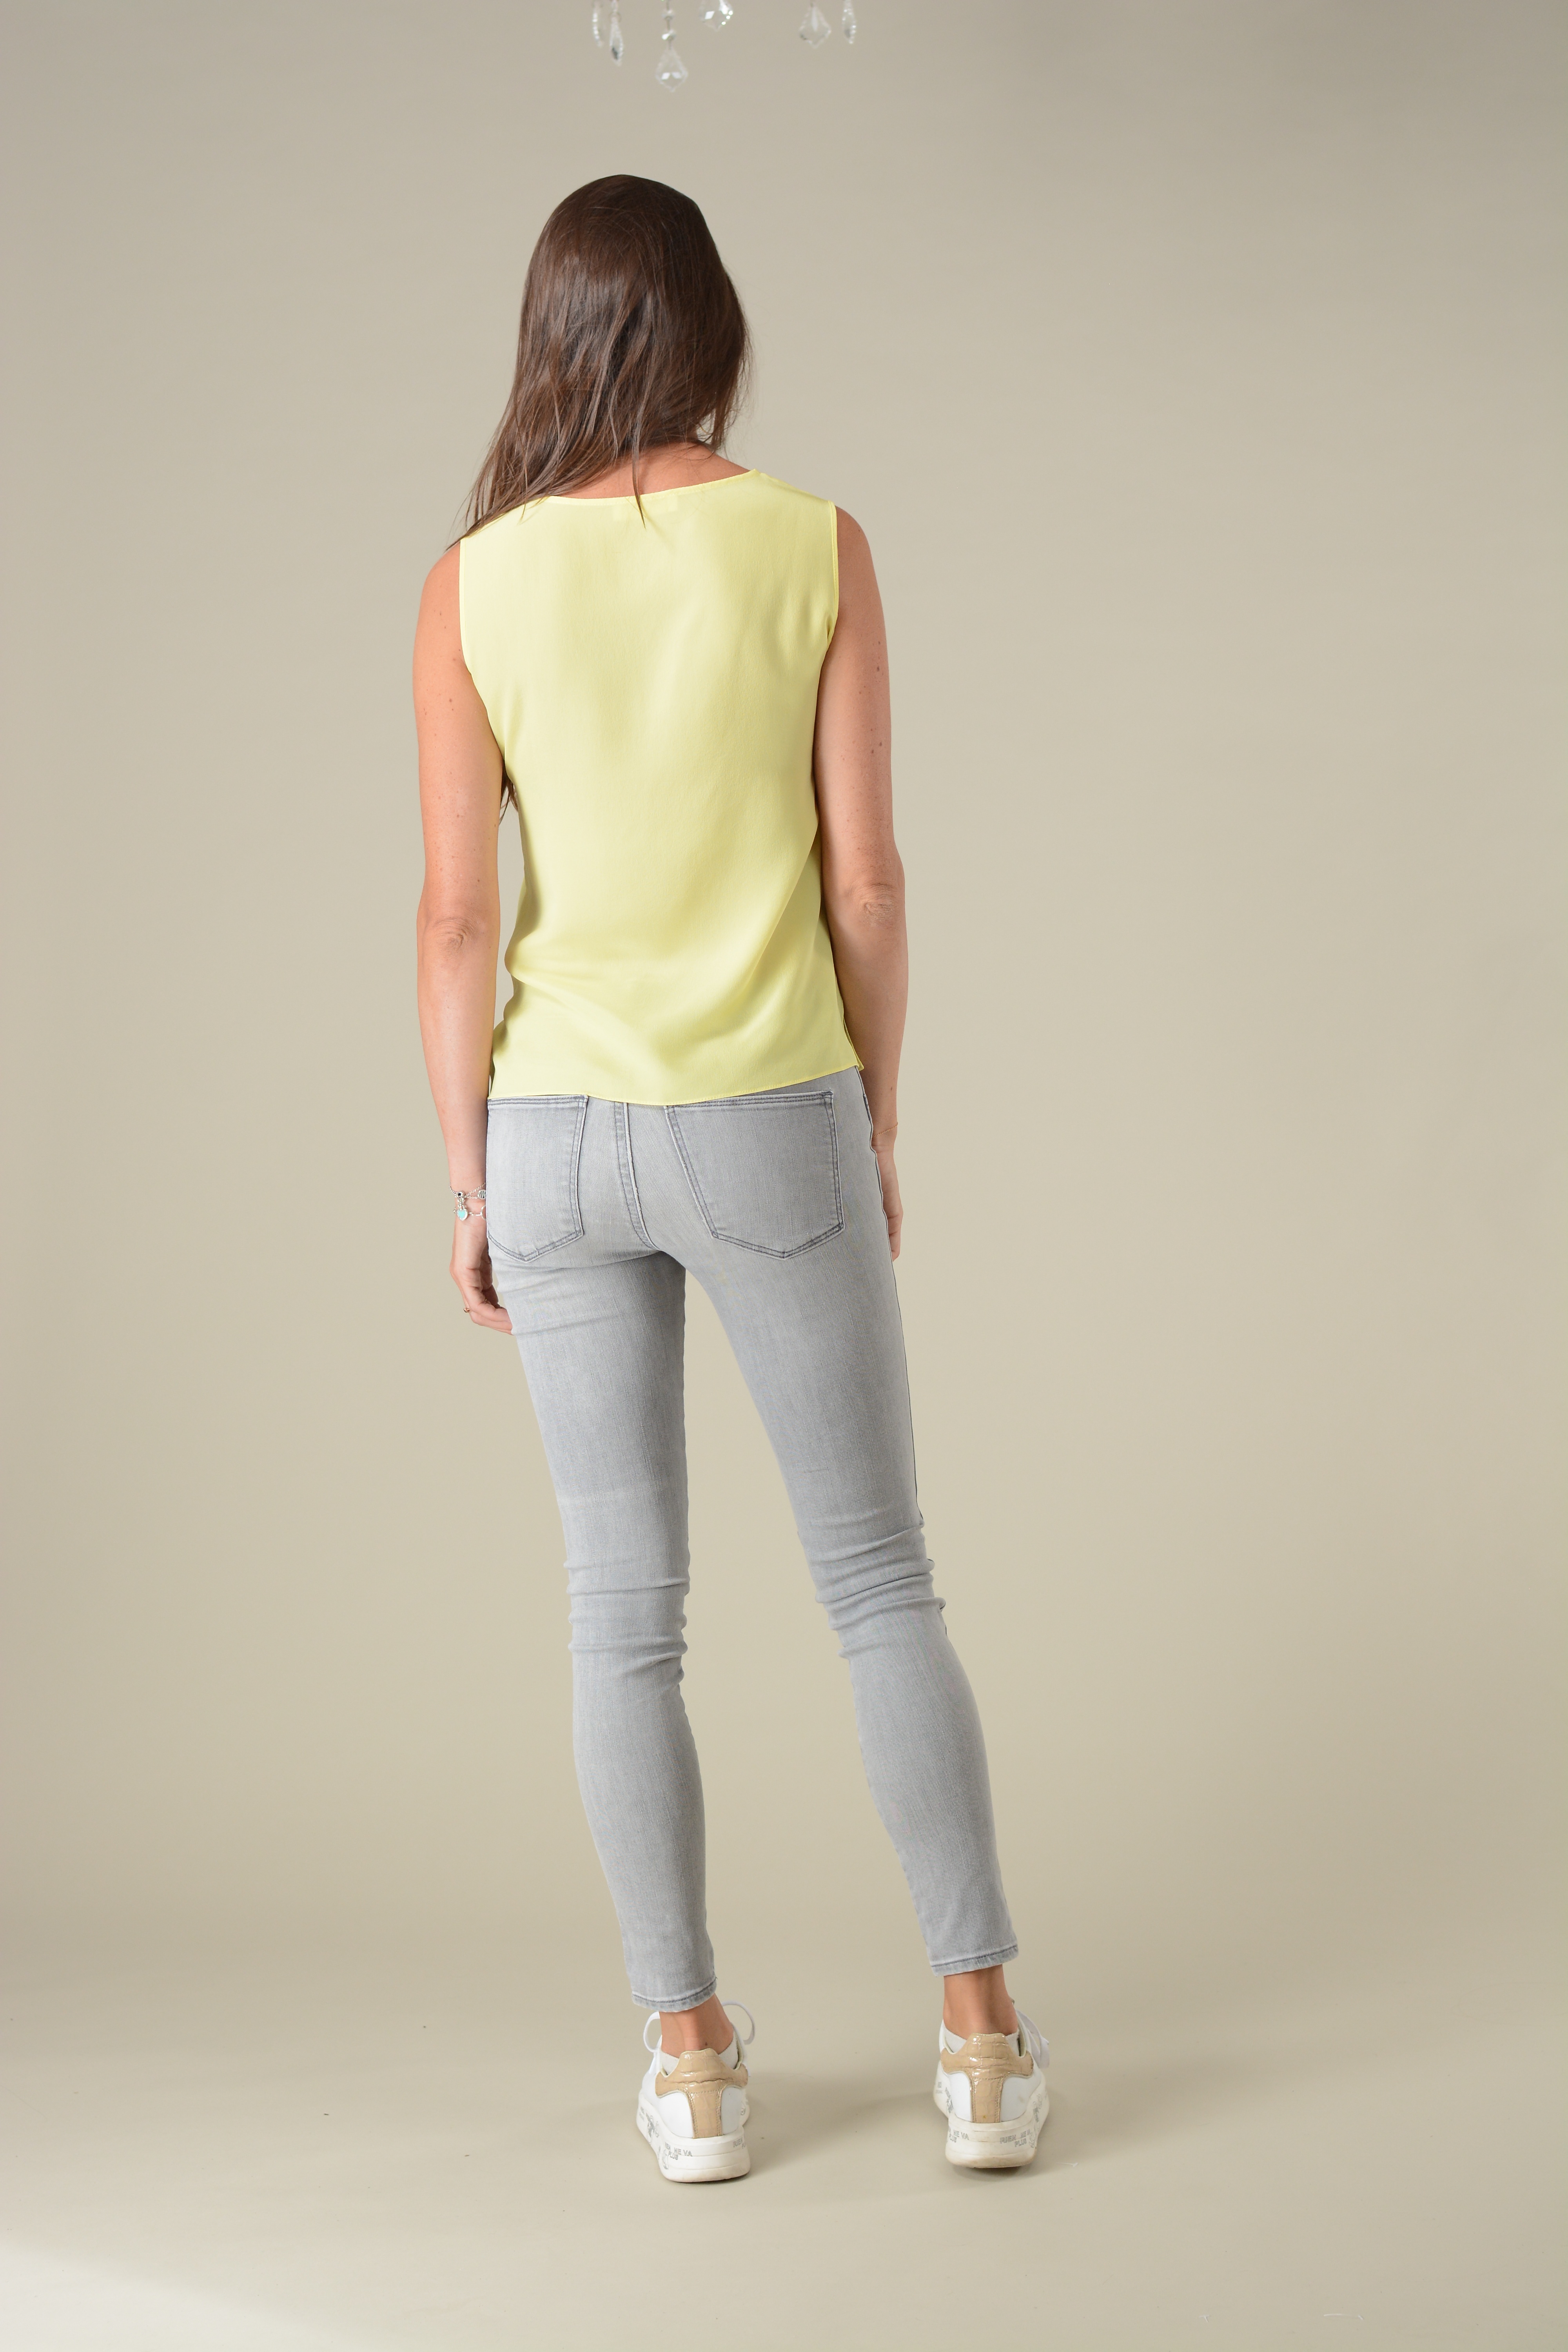 картинка Блузка Топ Весна V-образный вырез, лимонная вербена магазина шелковой одежды и аксессуаров